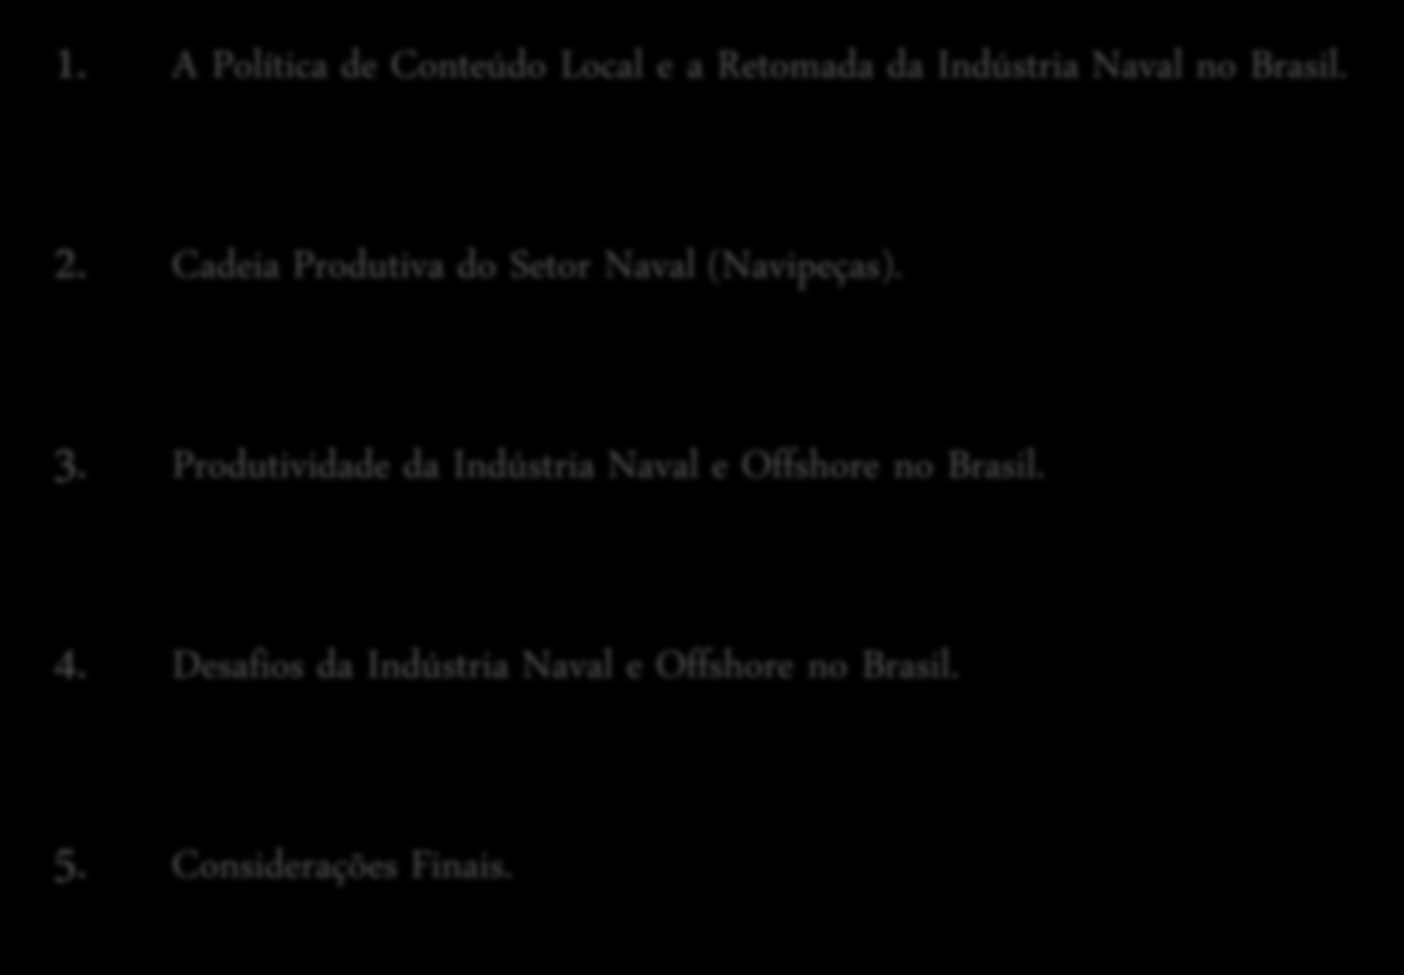 Agenda 1. A Política de Conteúdo Local e a Retomada da Indústria Naval no Brasil. 2. Cadeia Produtiva do Setor Naval (Navipeças). 3.